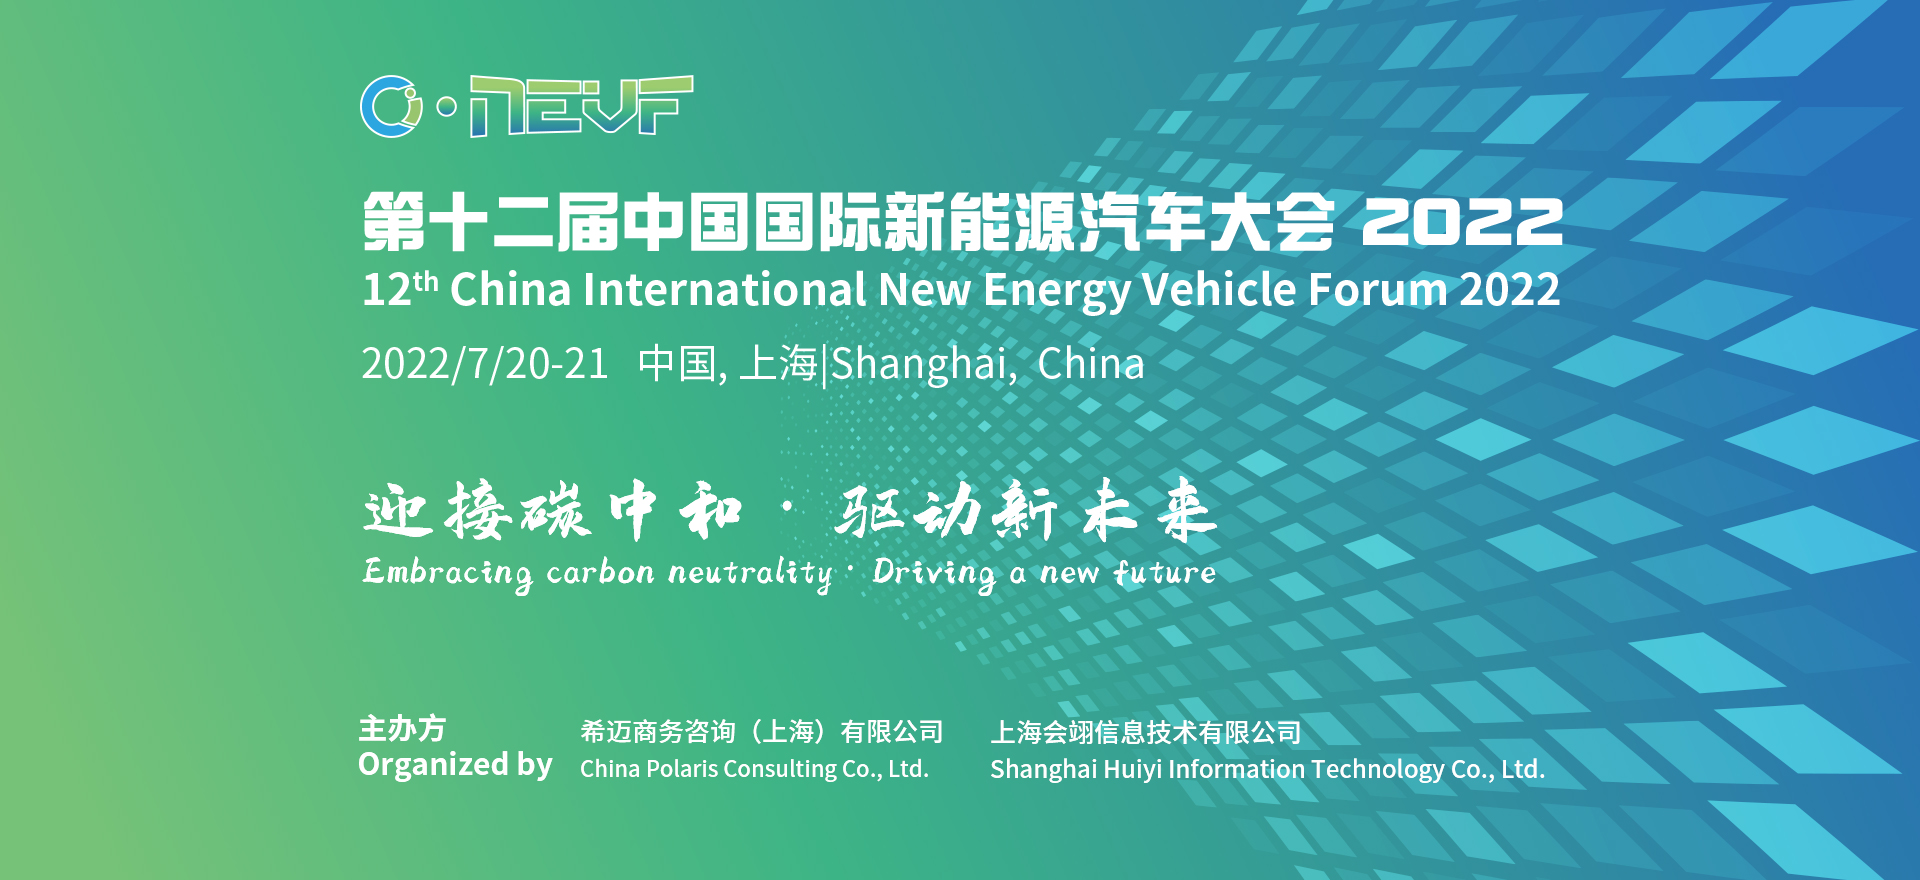 第十二届中国国际新能源汽车大会 2022(Banner)